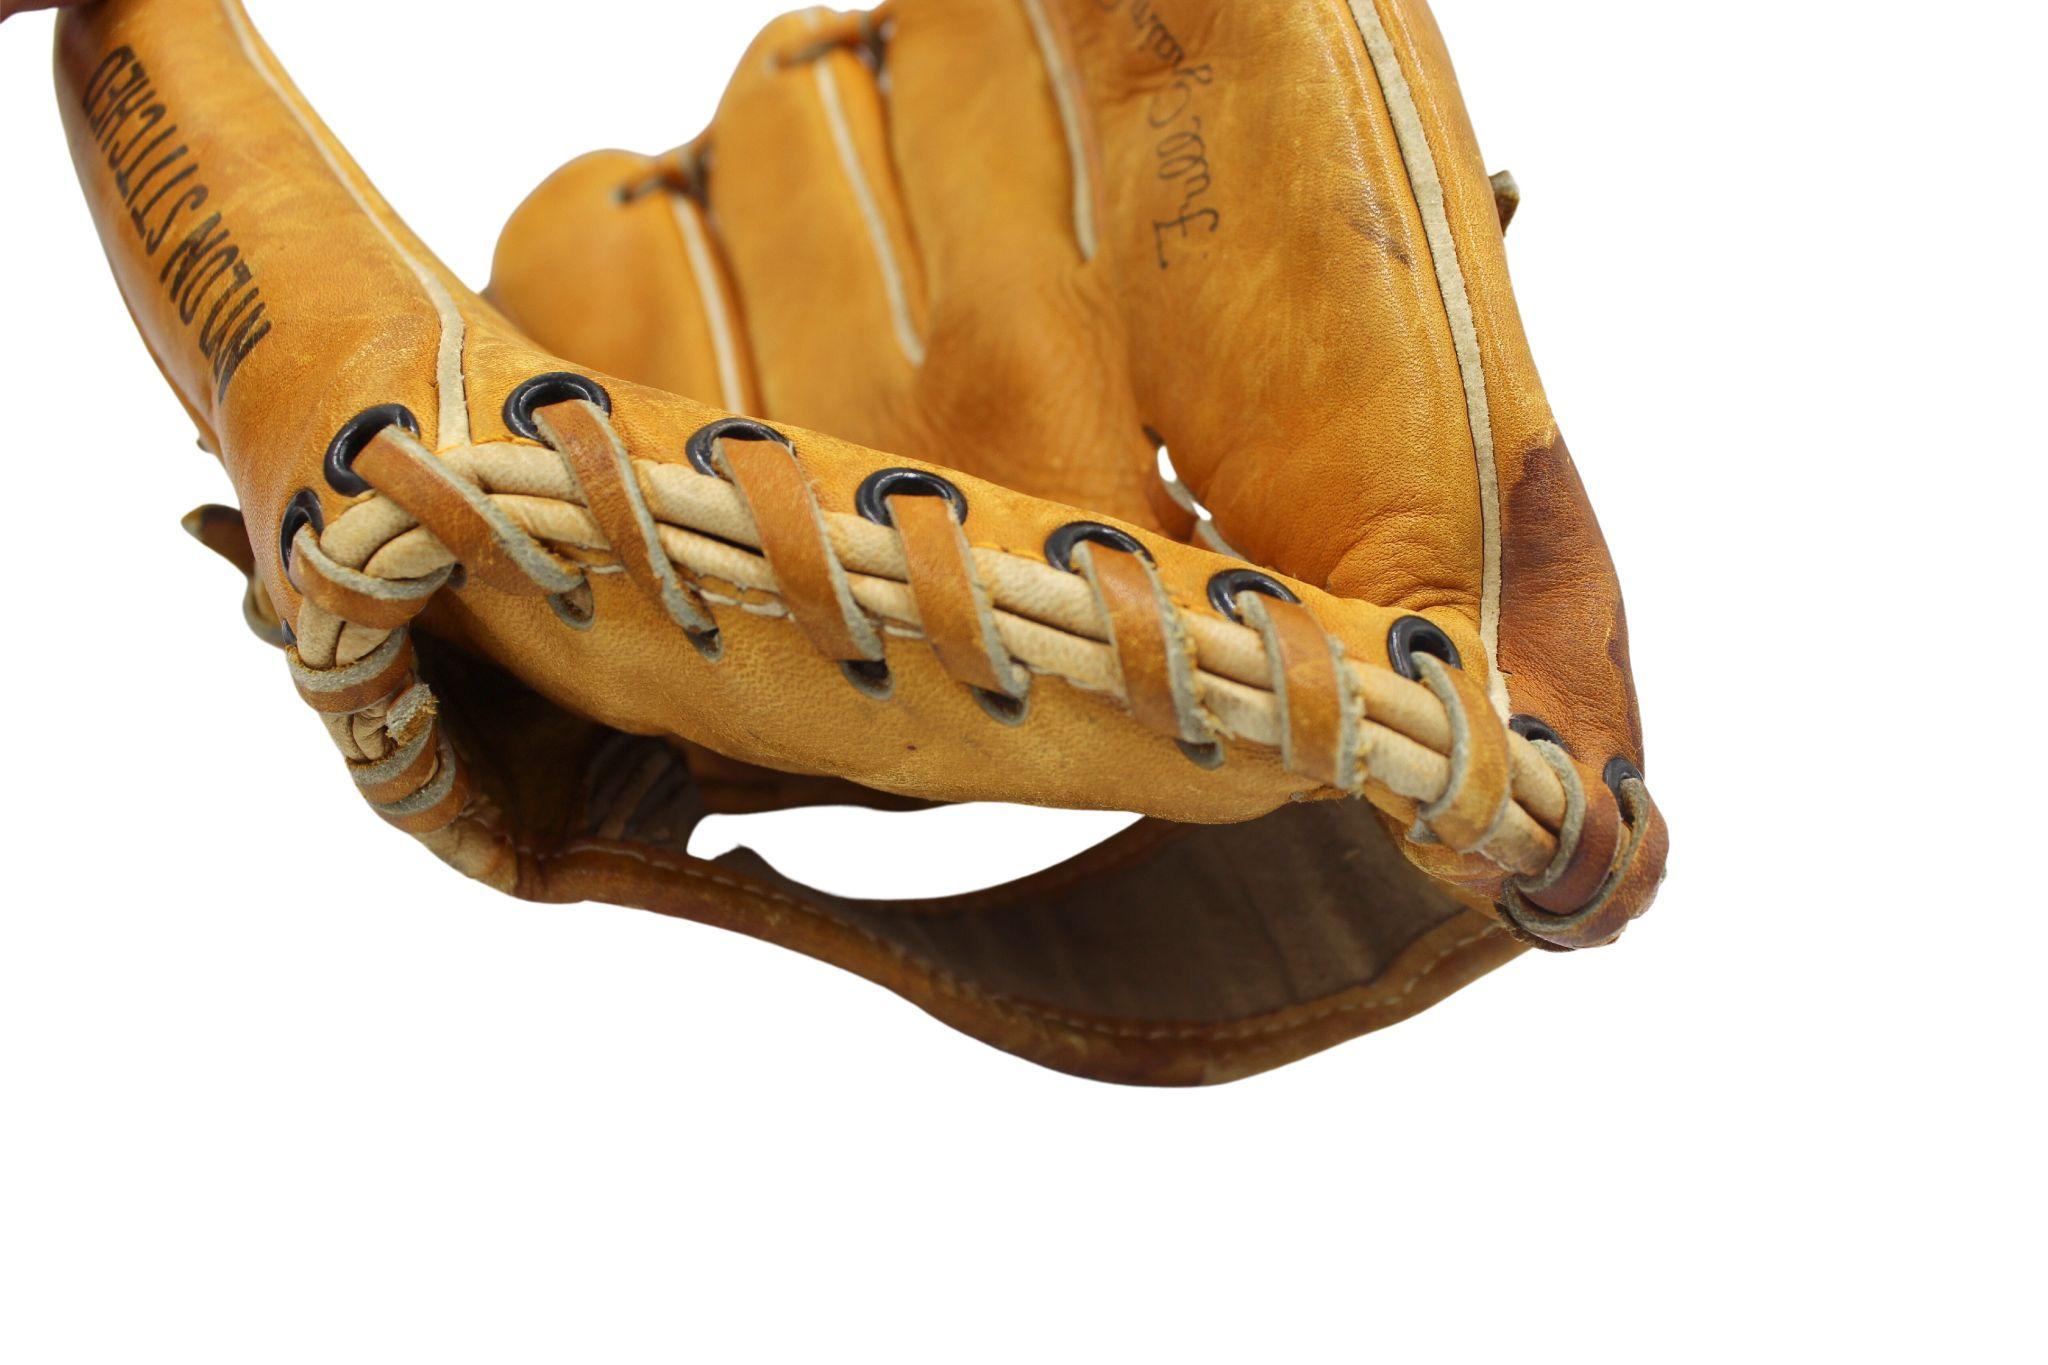 1960s baseball glove